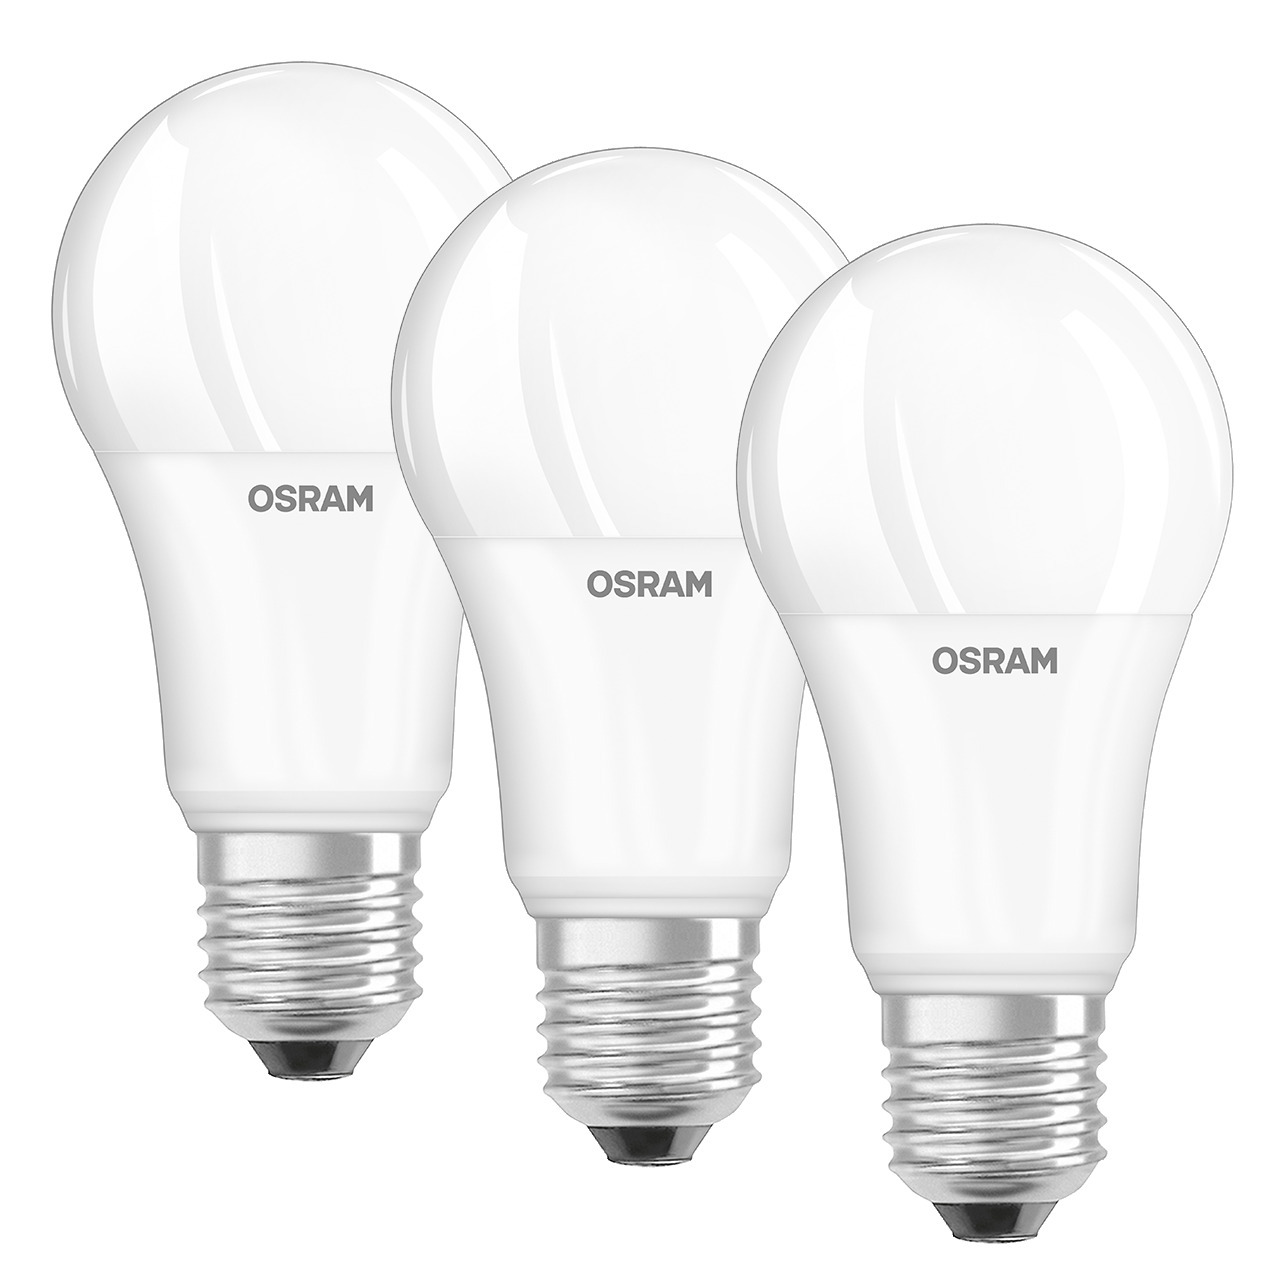 OSRAM 3er-Set 13-W-Filament-LED-Lampe E27- neutralweiss- matt 